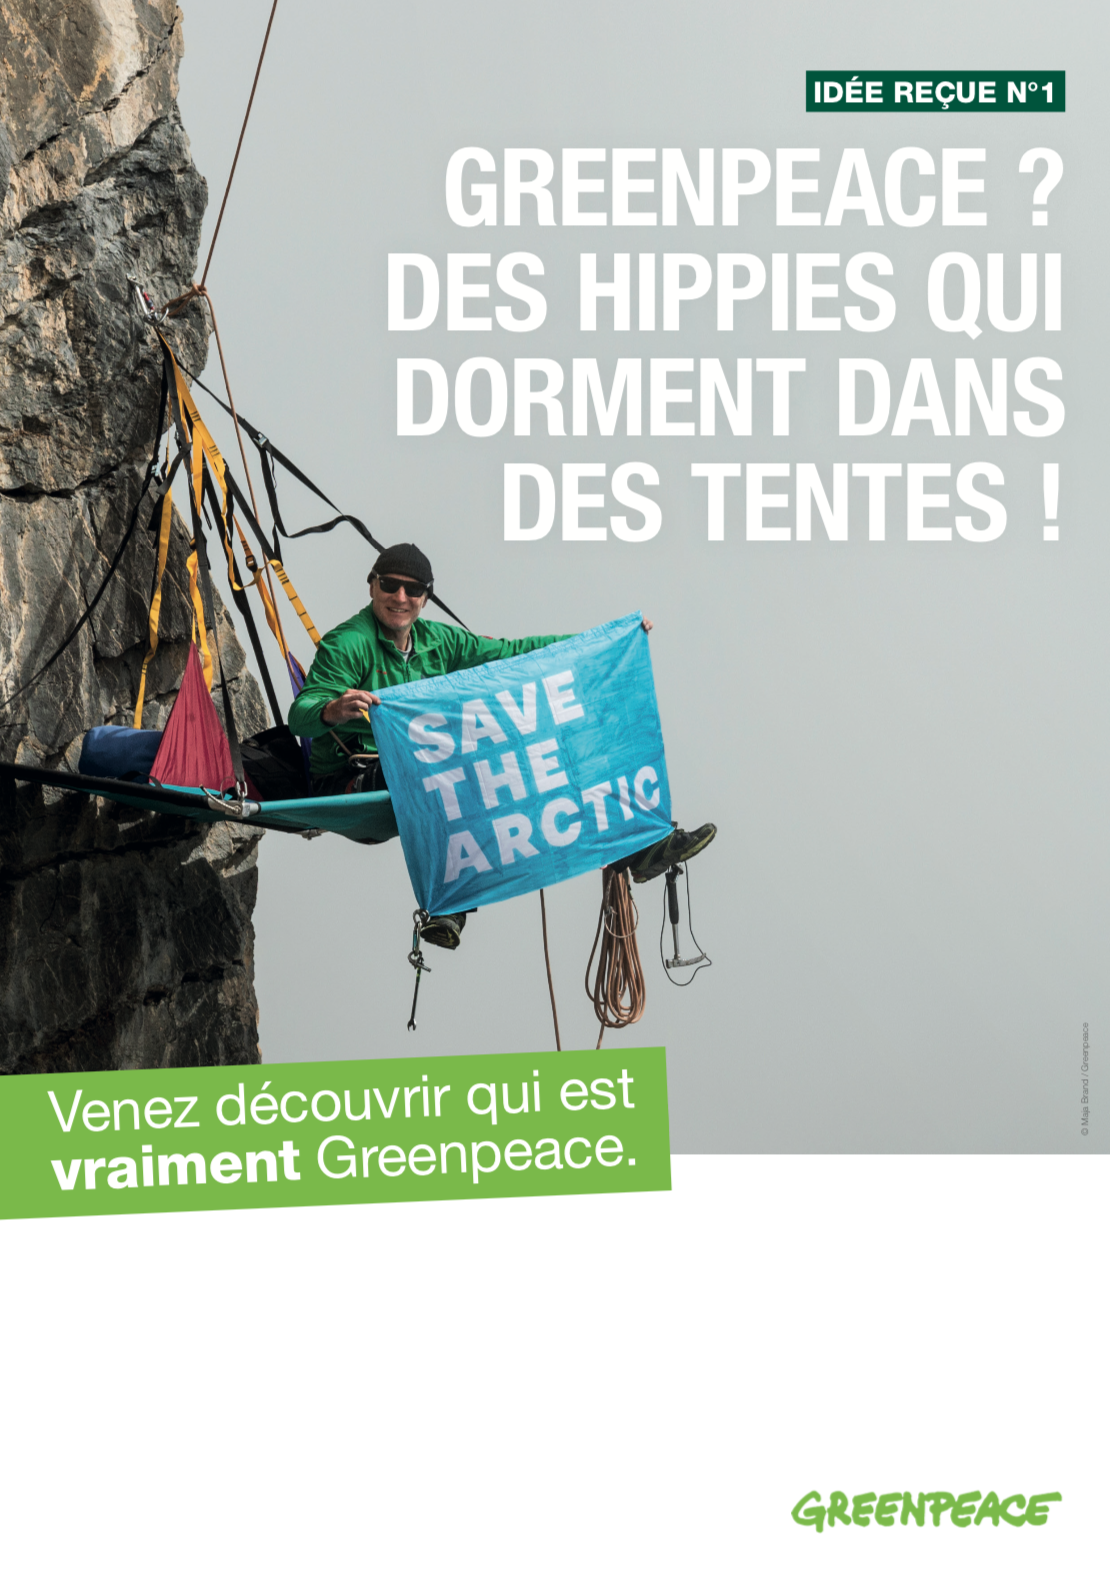 Rencontrez Greenpeace lundi 13 mai